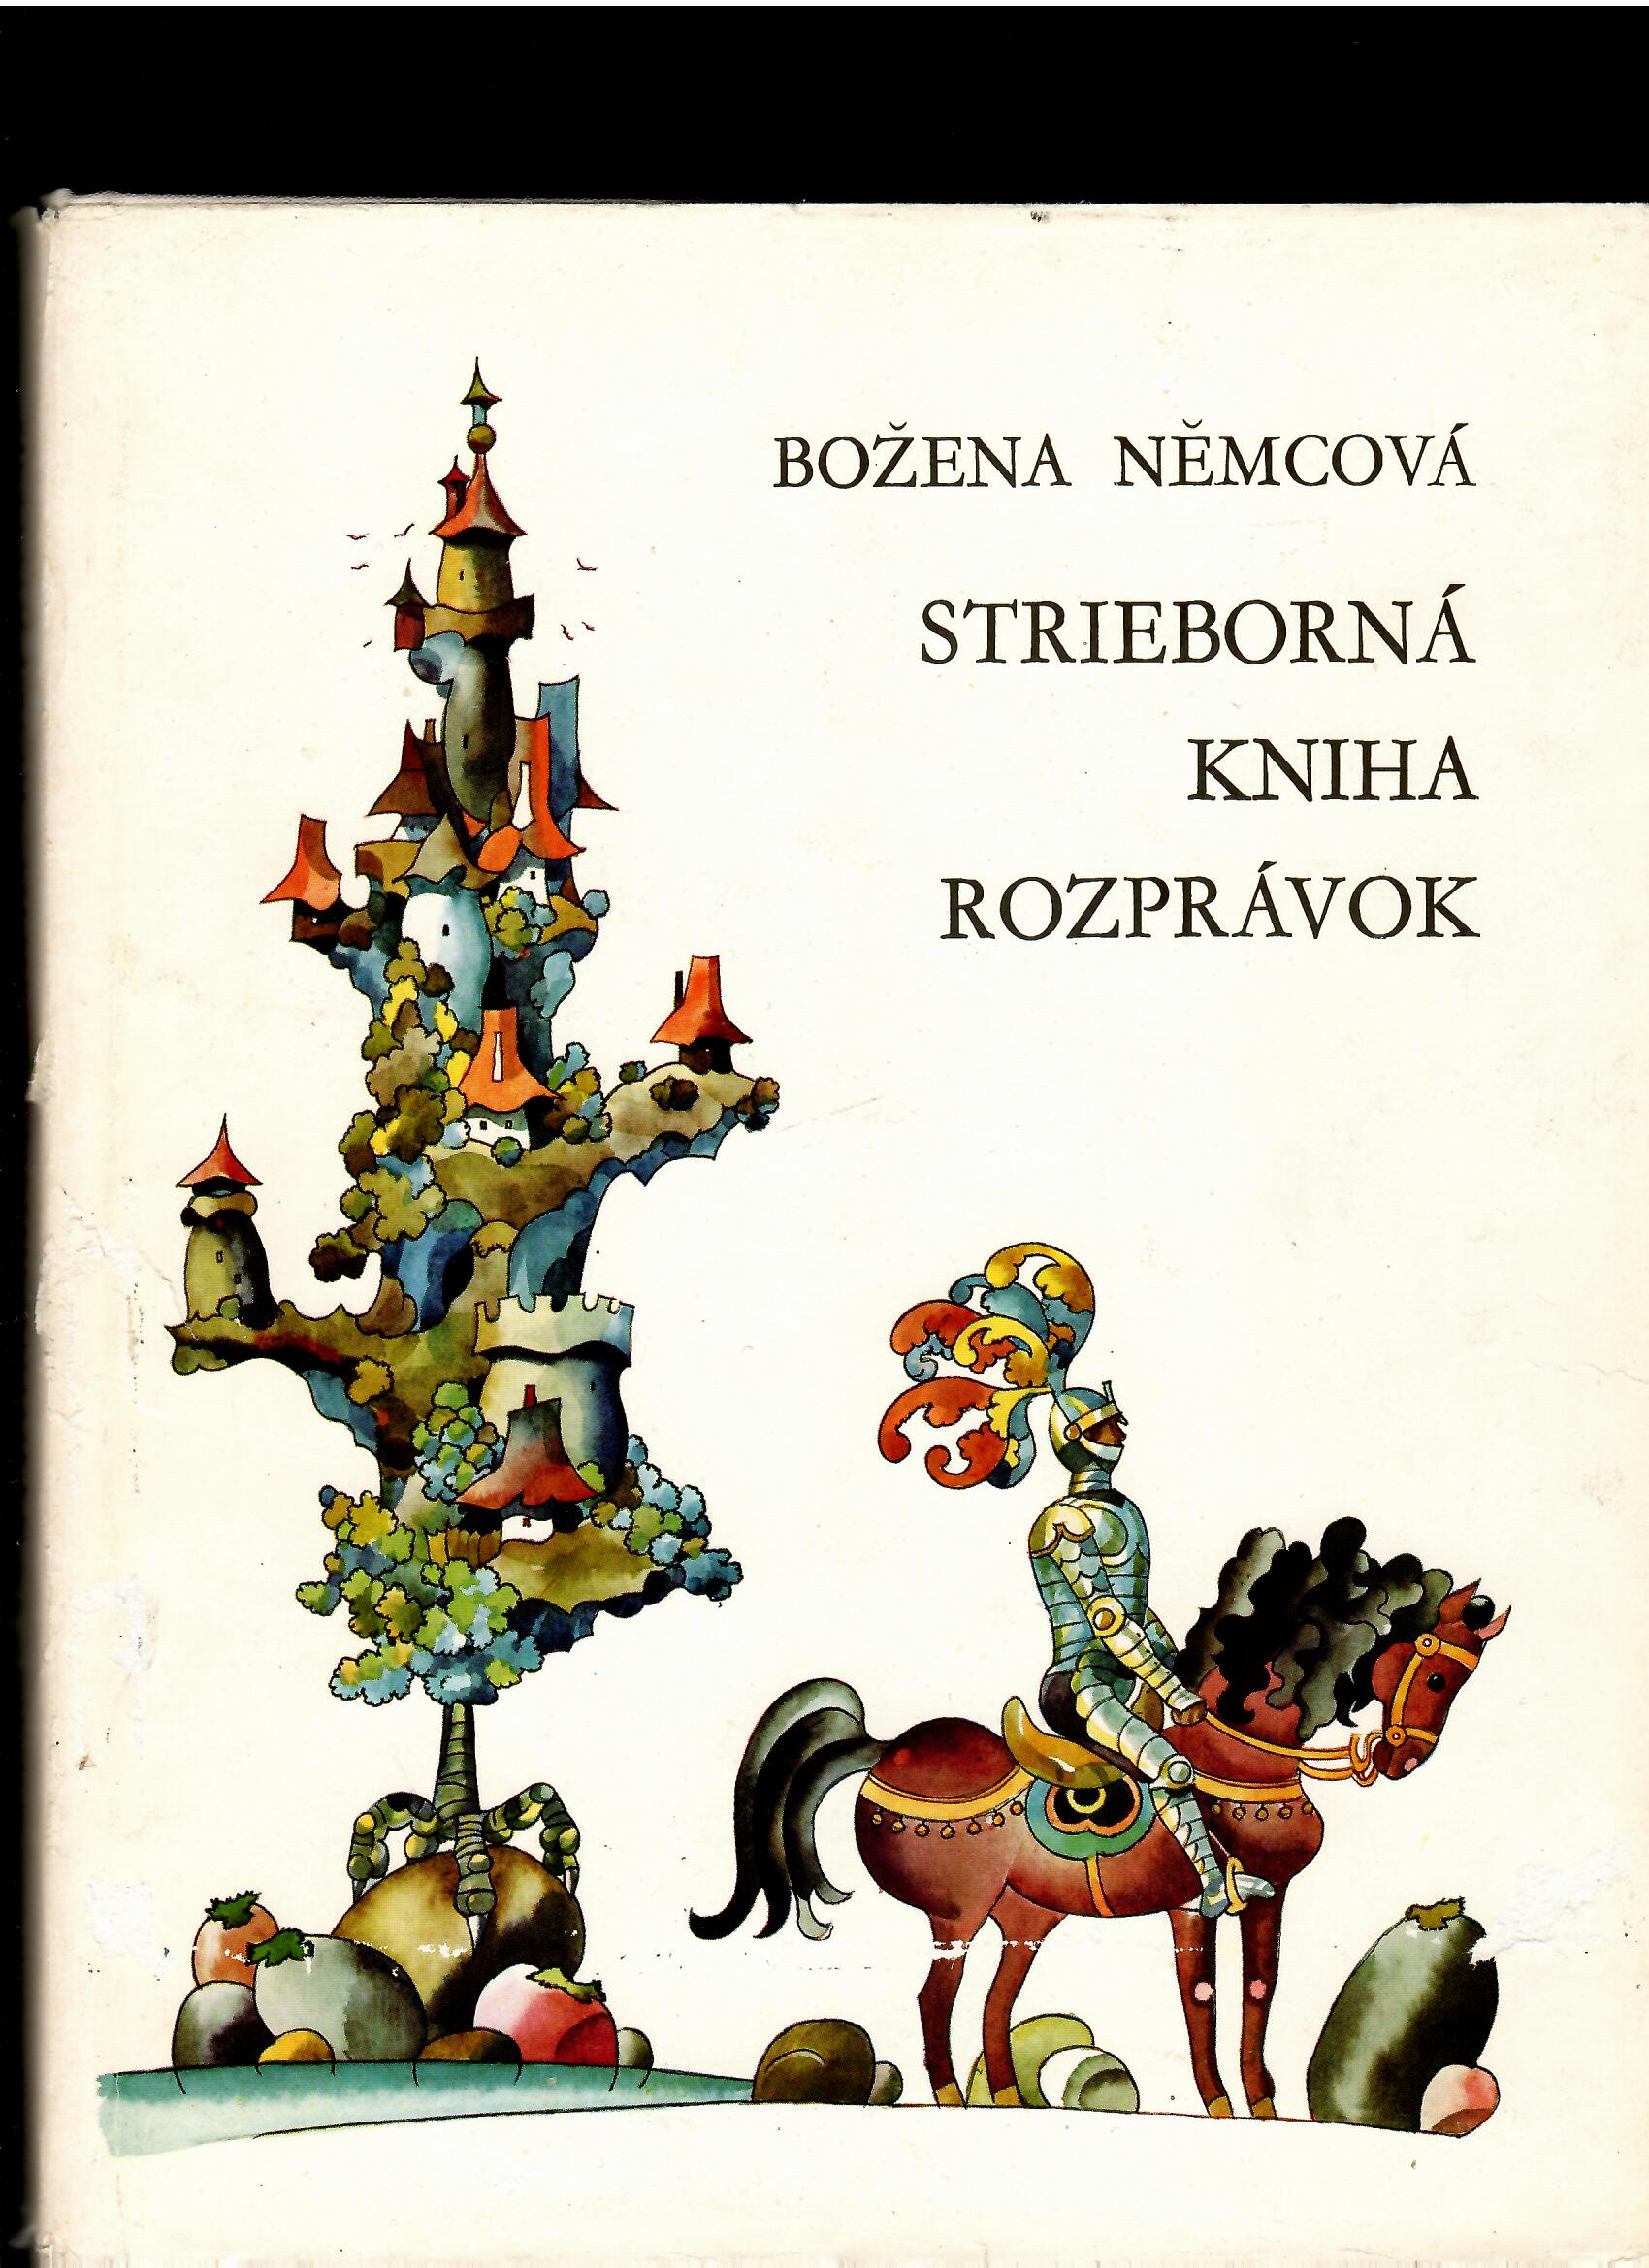 Božena Němcová: Strieborná kniha rozprávok /1969, il. Štefan Cpin/